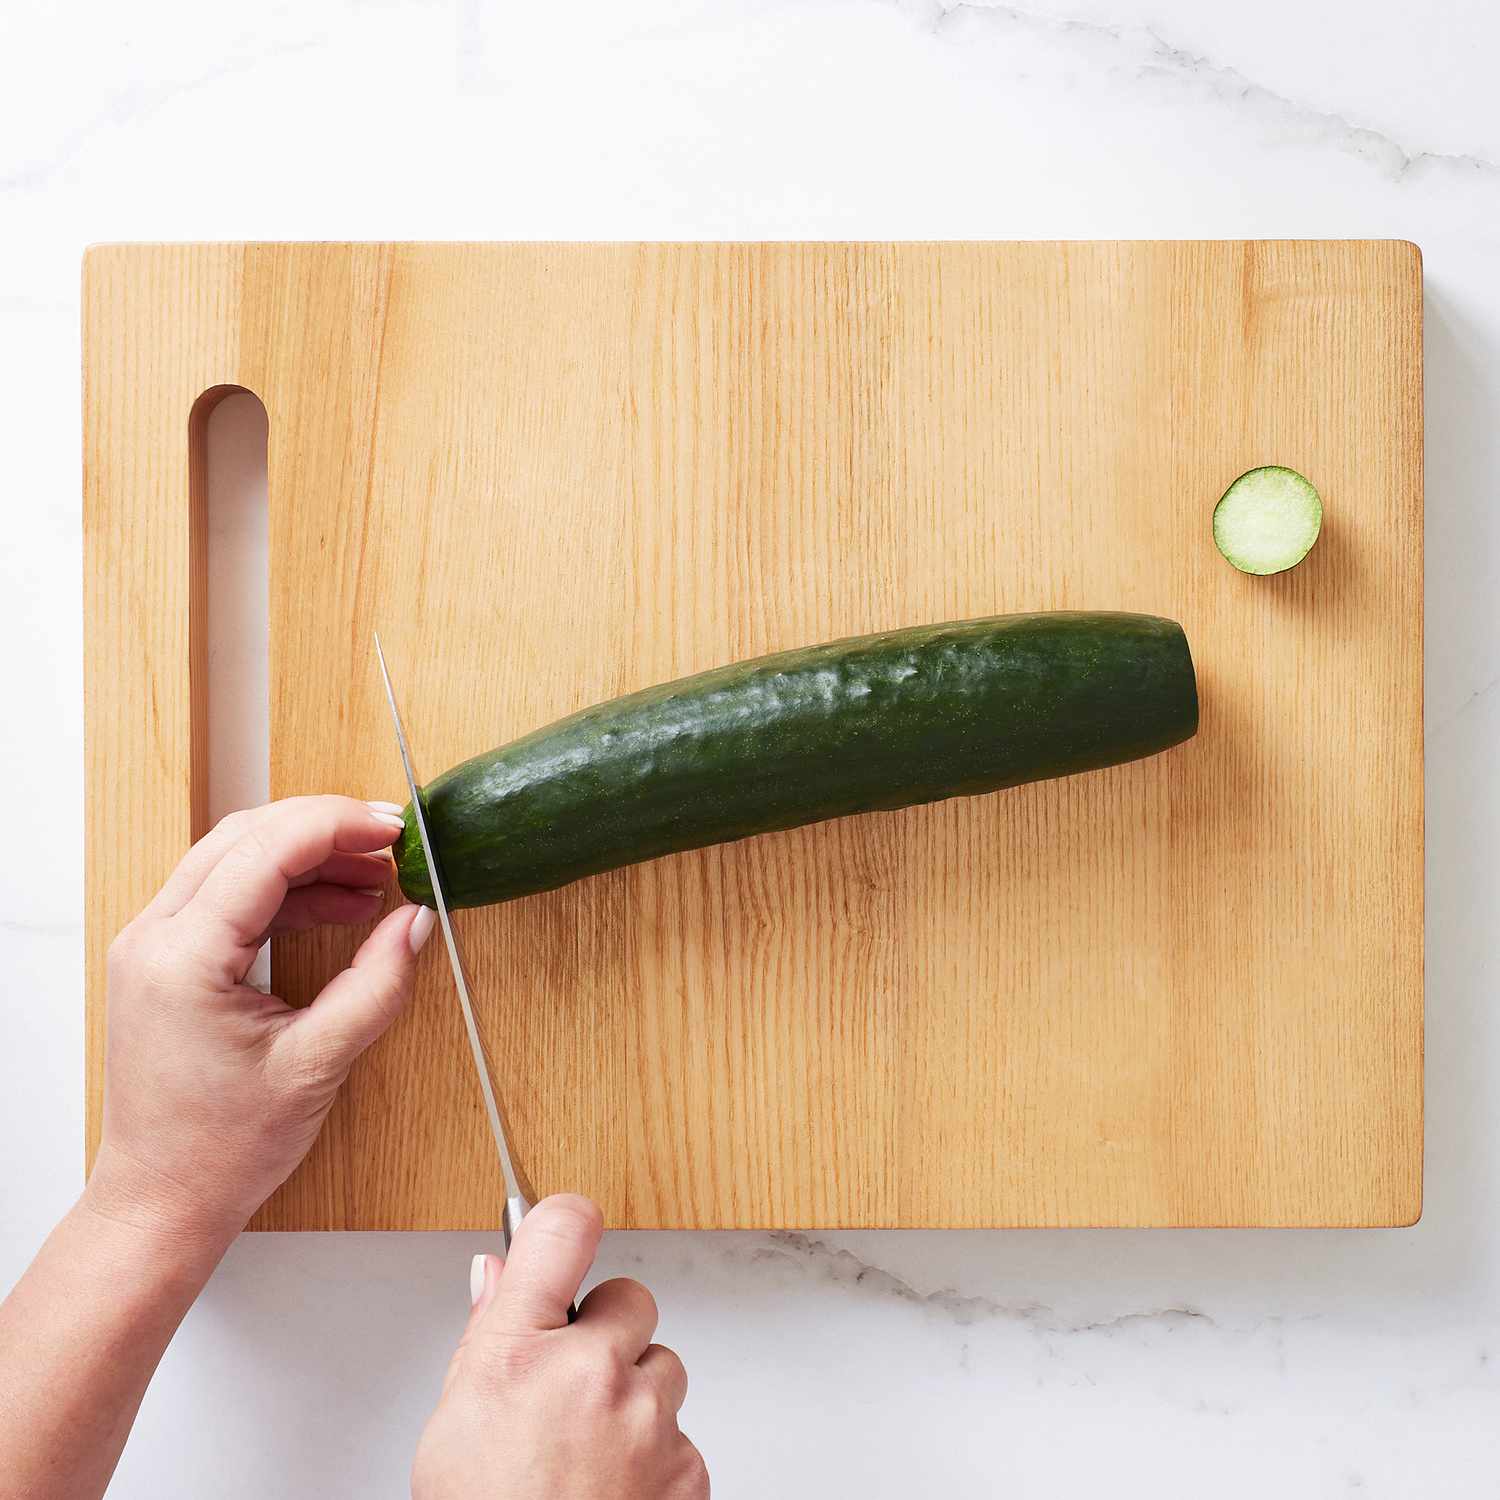 Close up of cutting a cucumber